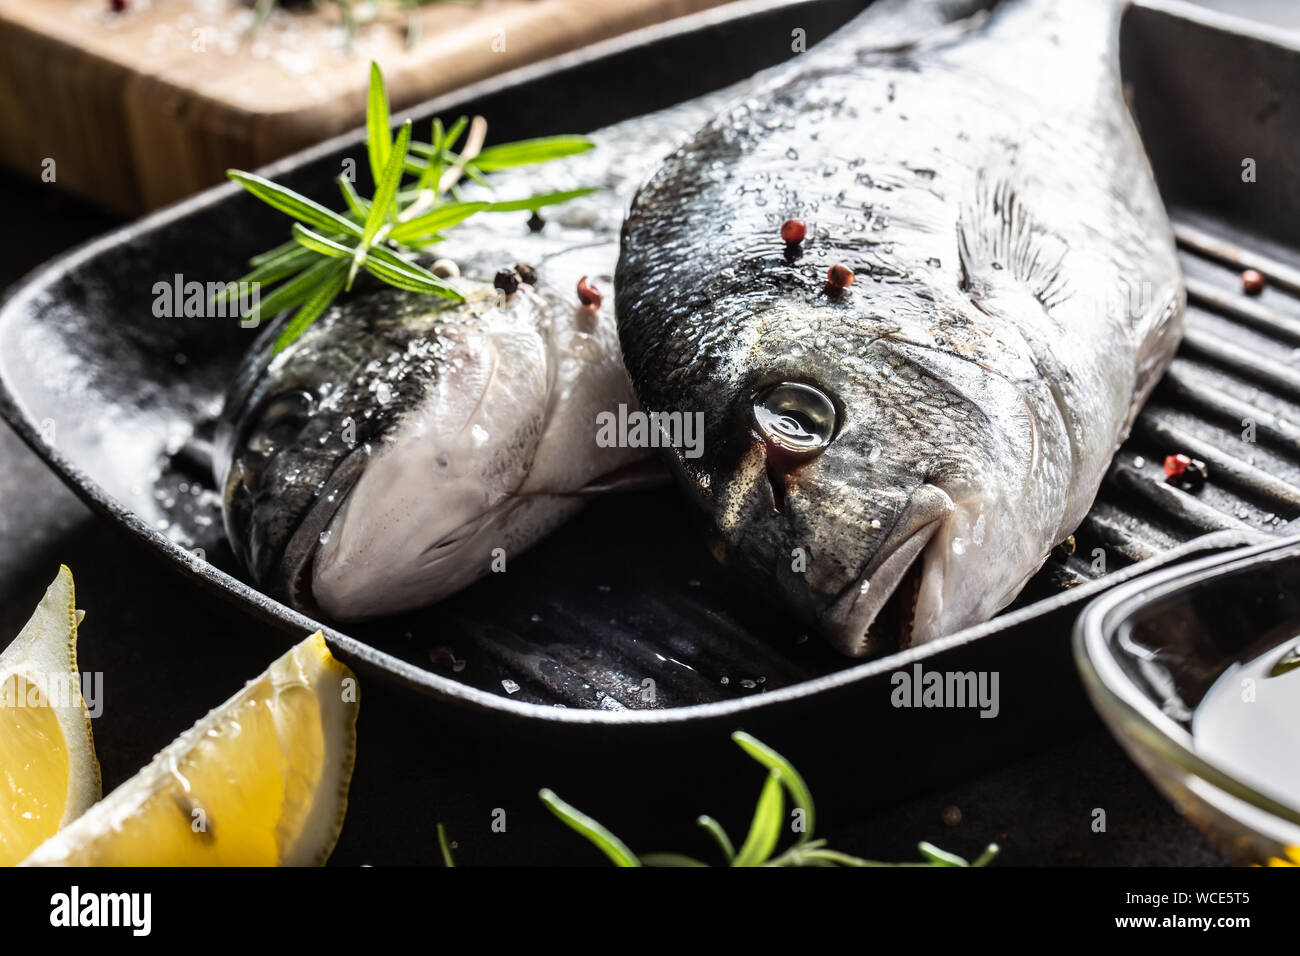 La brème poisson méditerranéen avec des épices herbes sel ail et citron. Fruits de mer sains. Concept de l'alimentation de la mer Banque D'Images